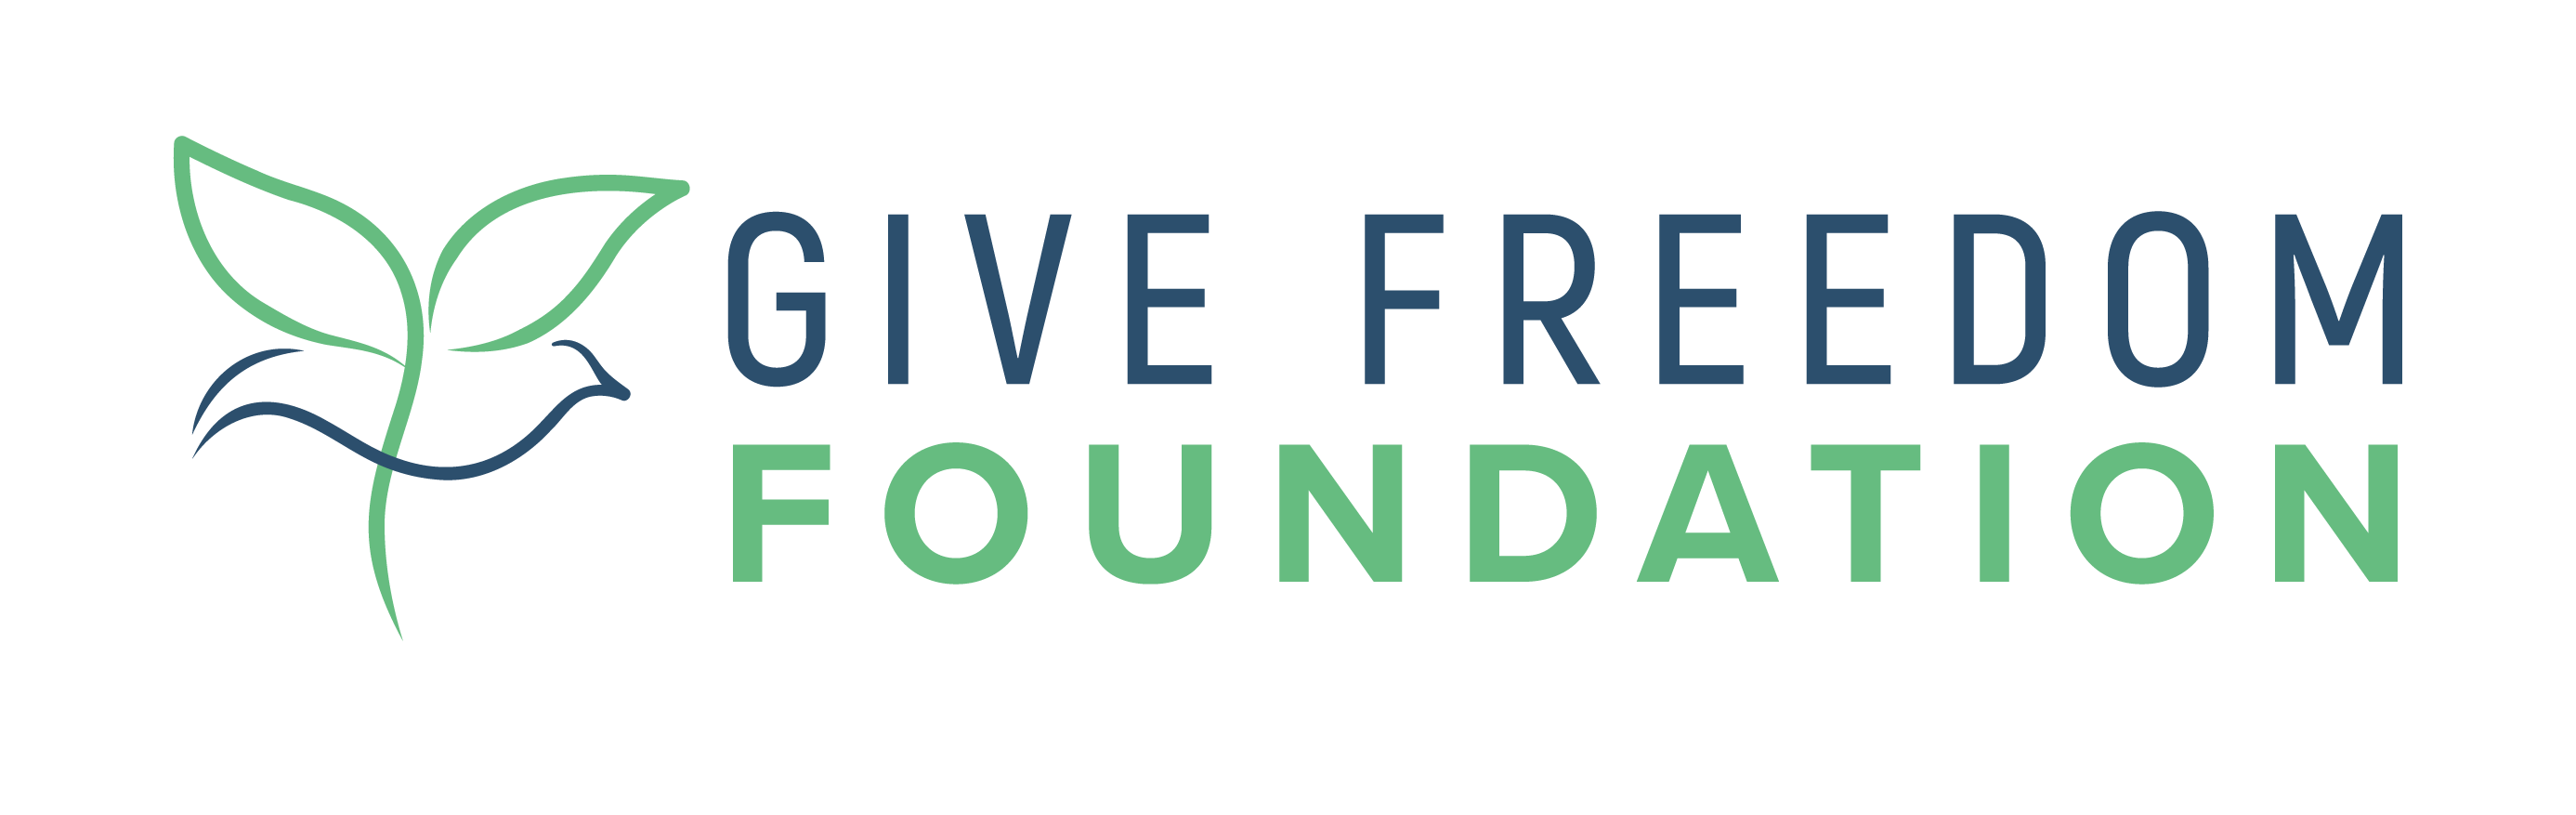 give freedom foundation logo